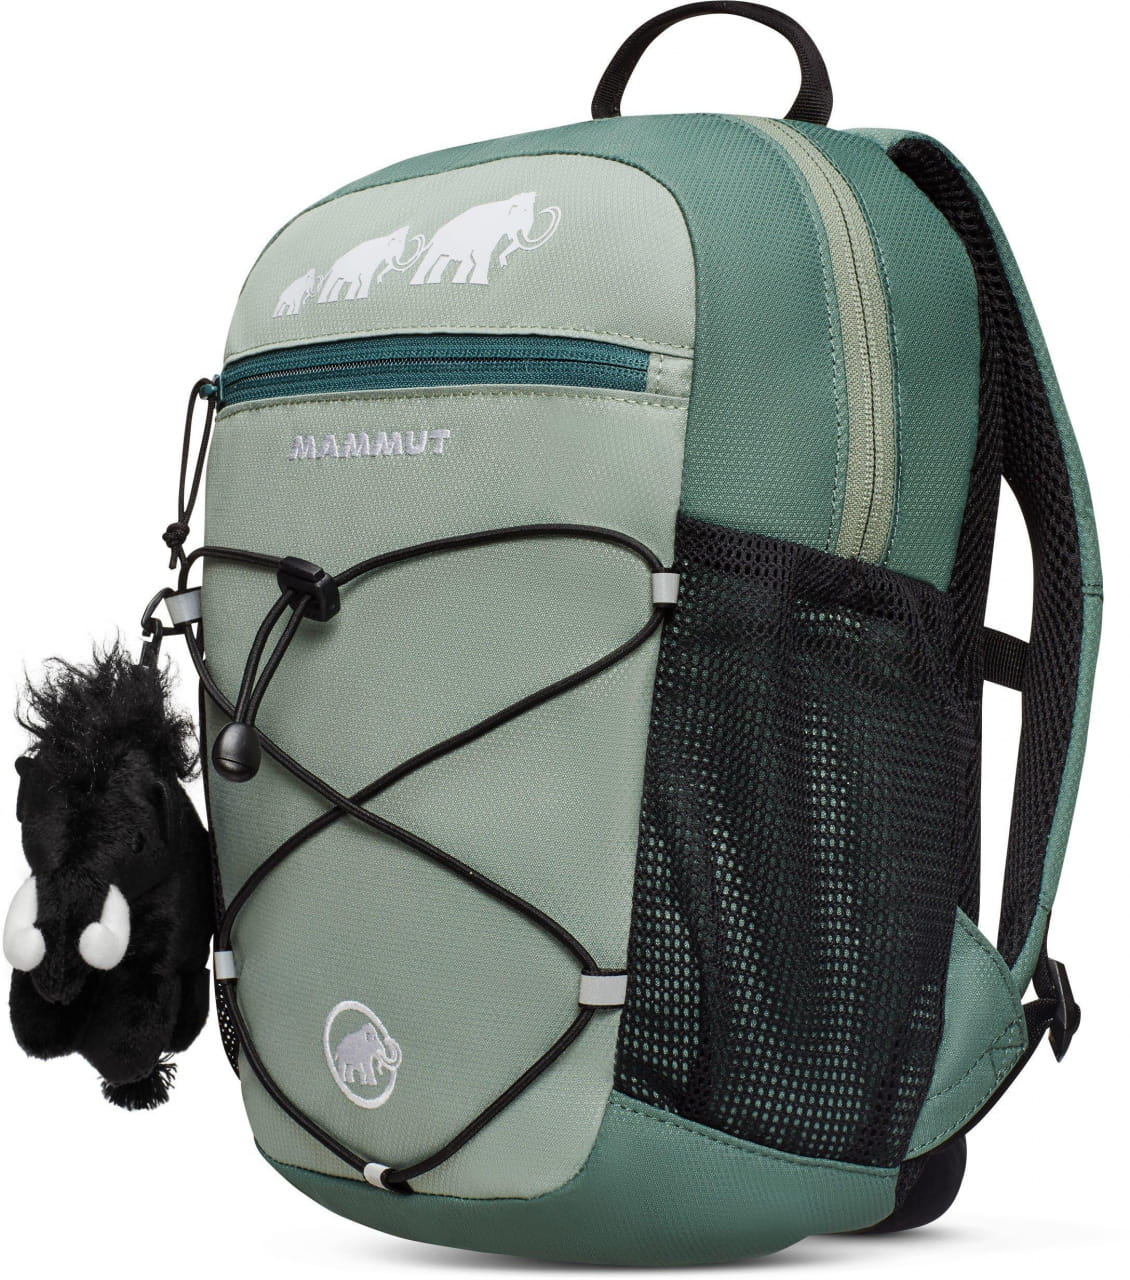 Outdoor-Rucksack für Kinder Mammut First Zip 8